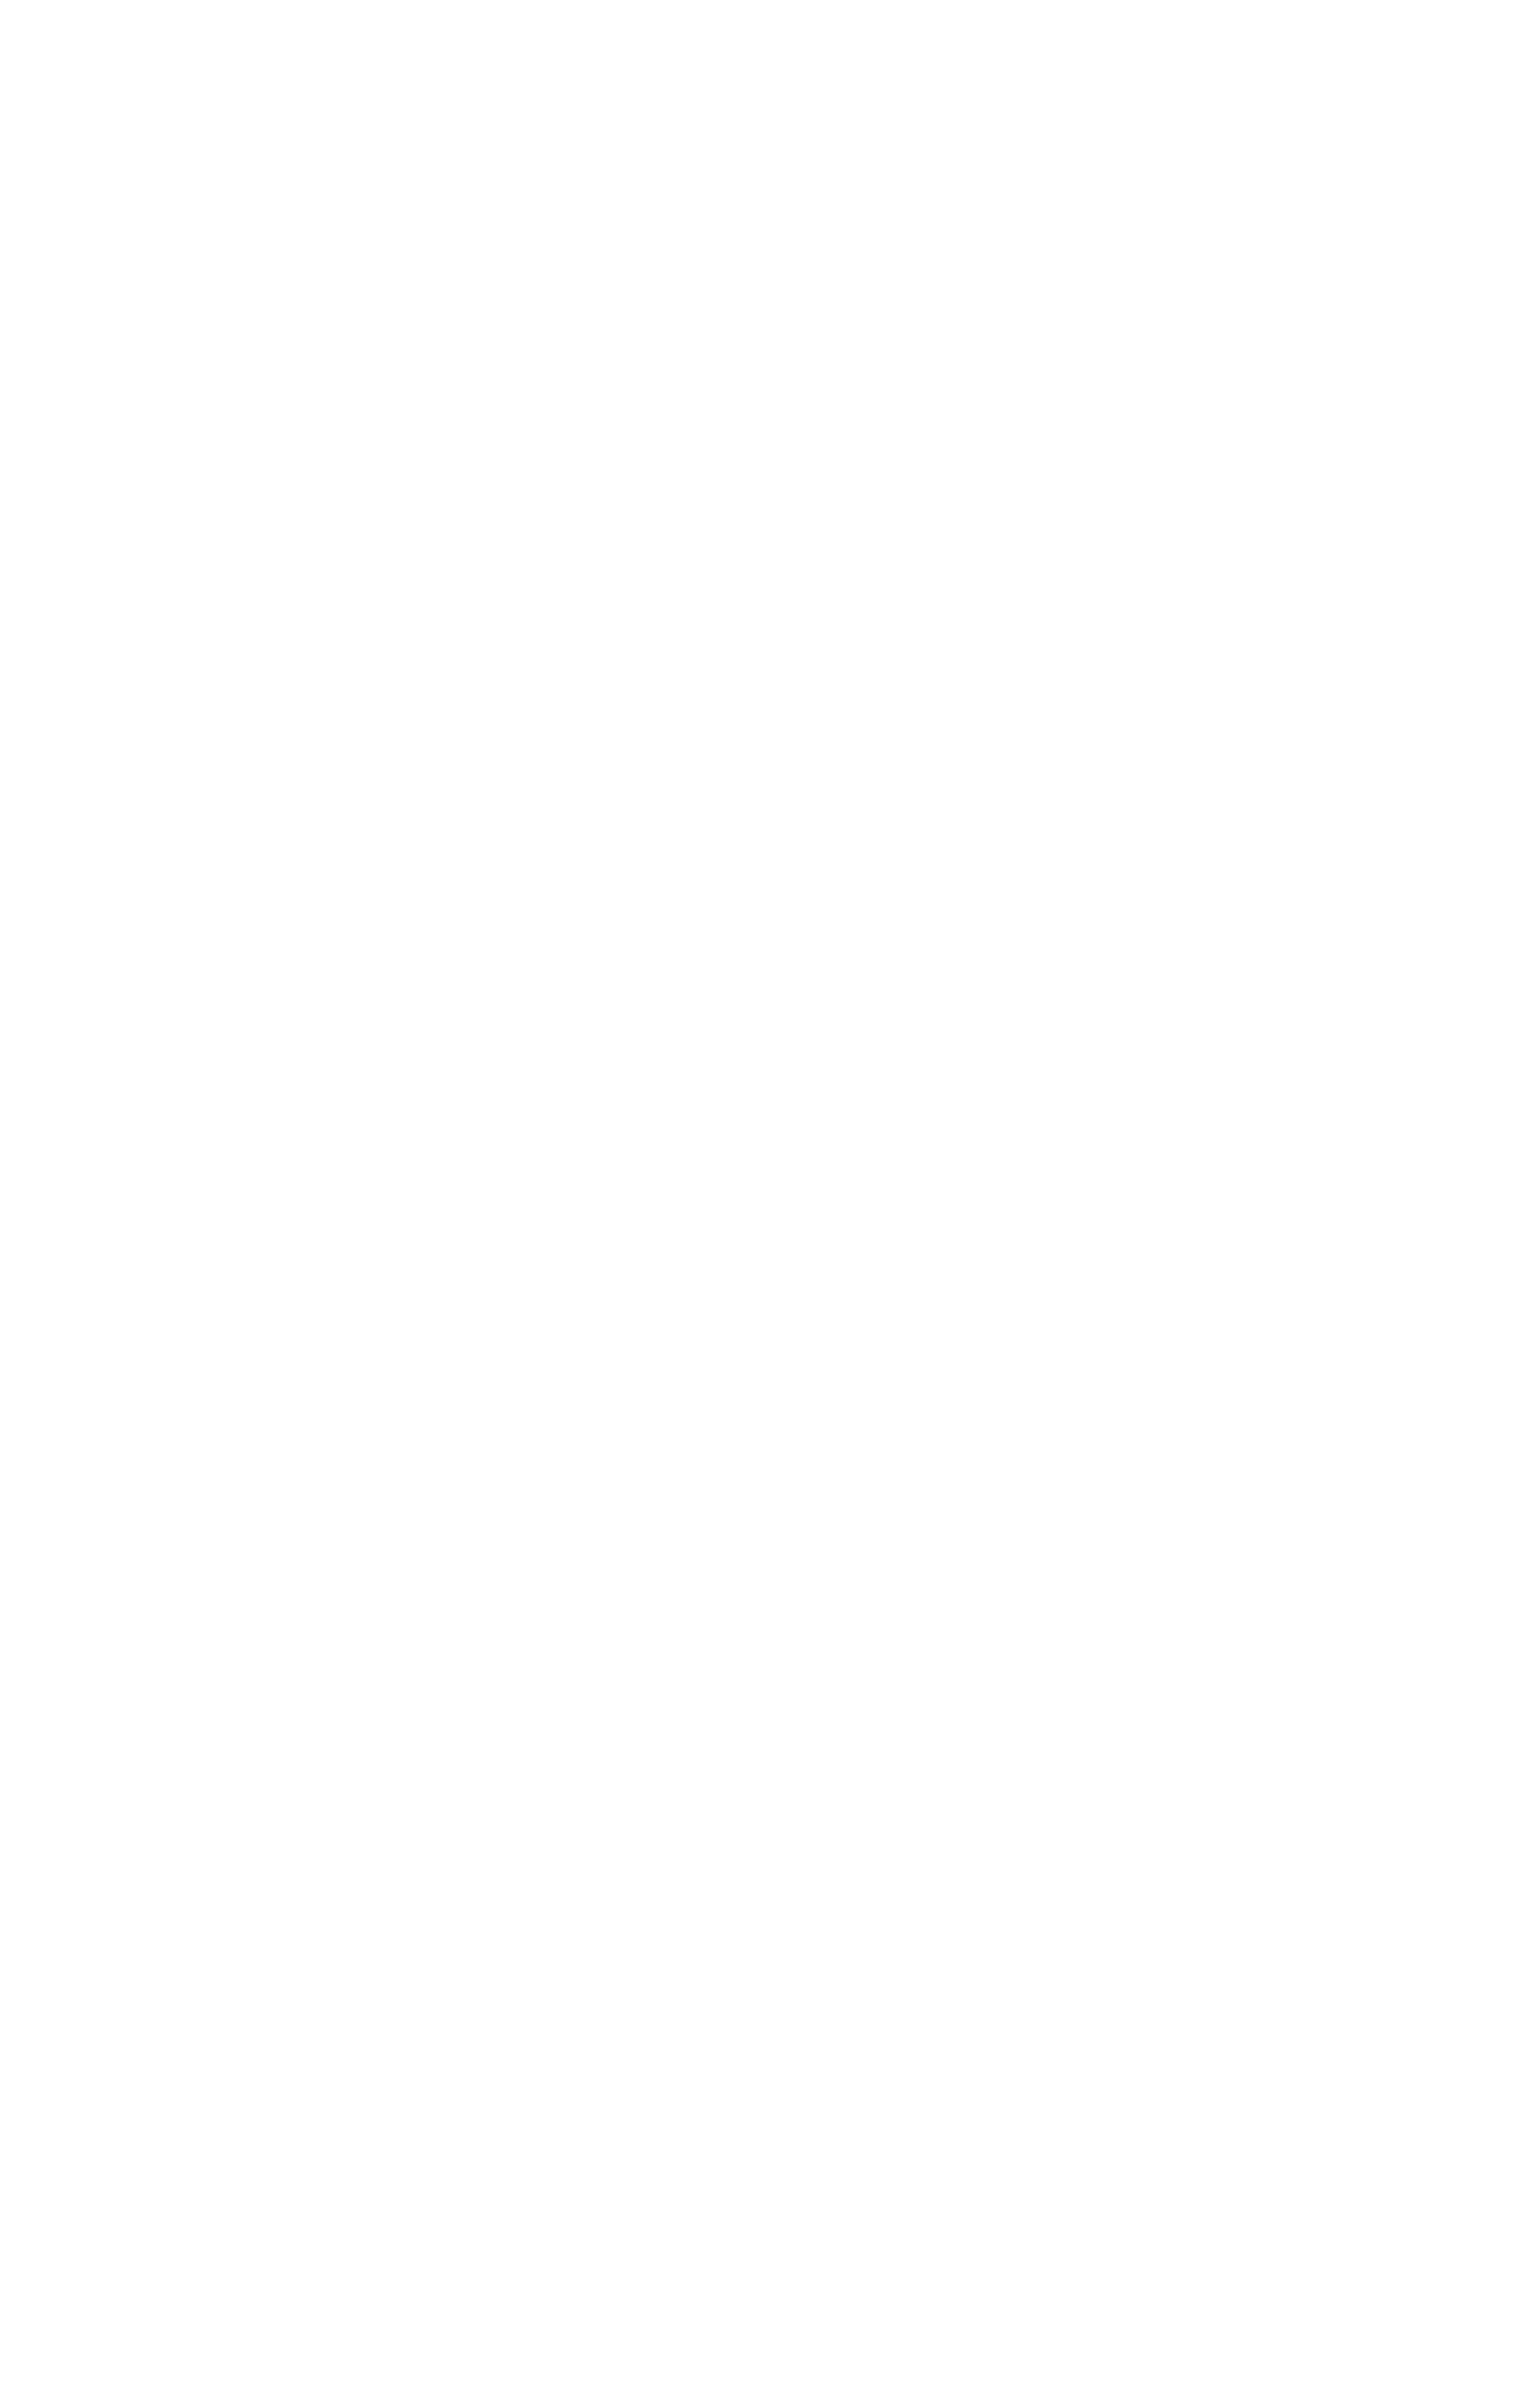 di.ar.de